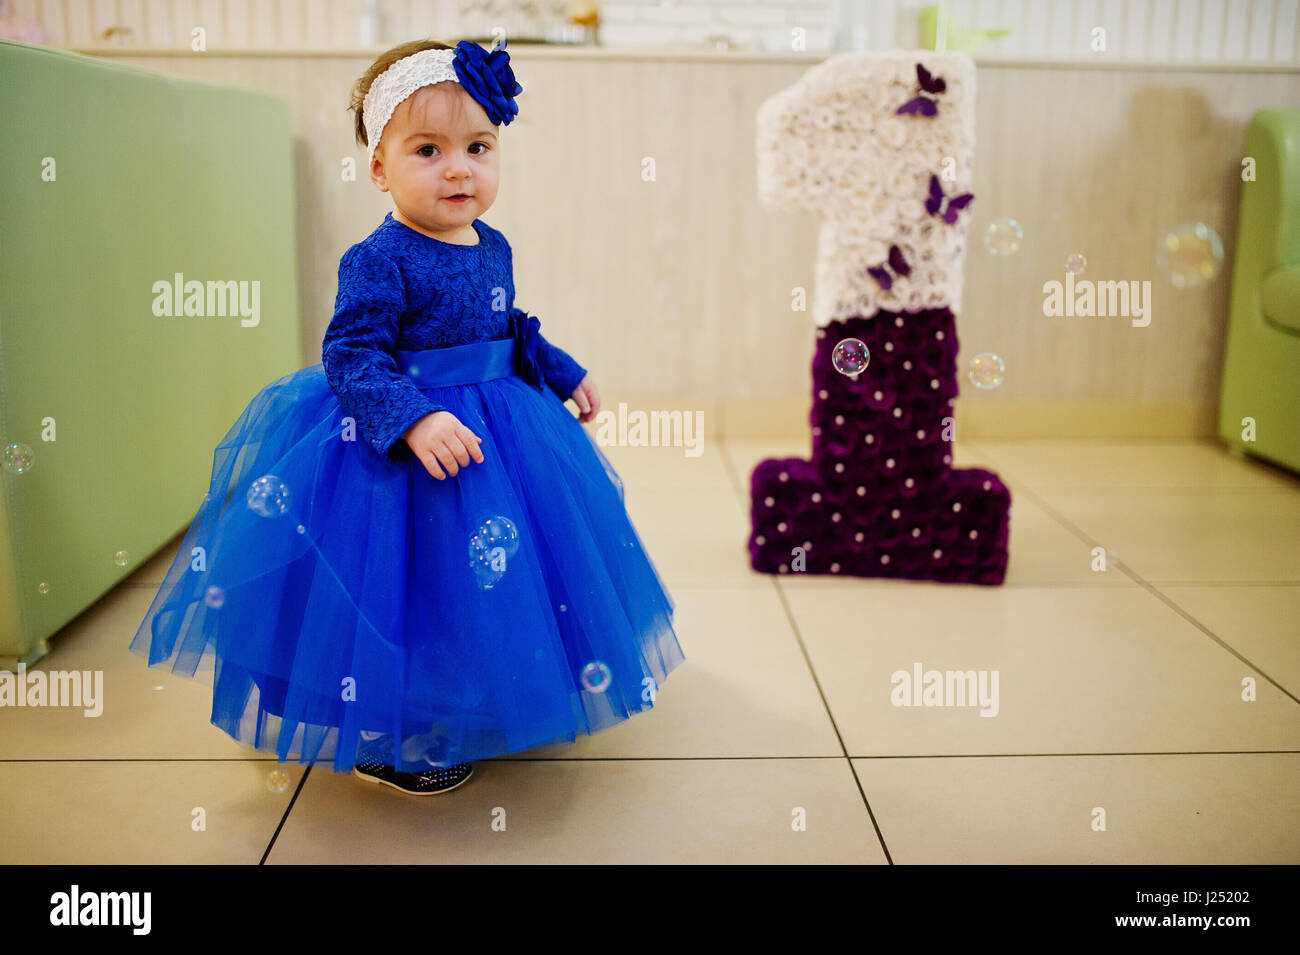 blue dress baby girl